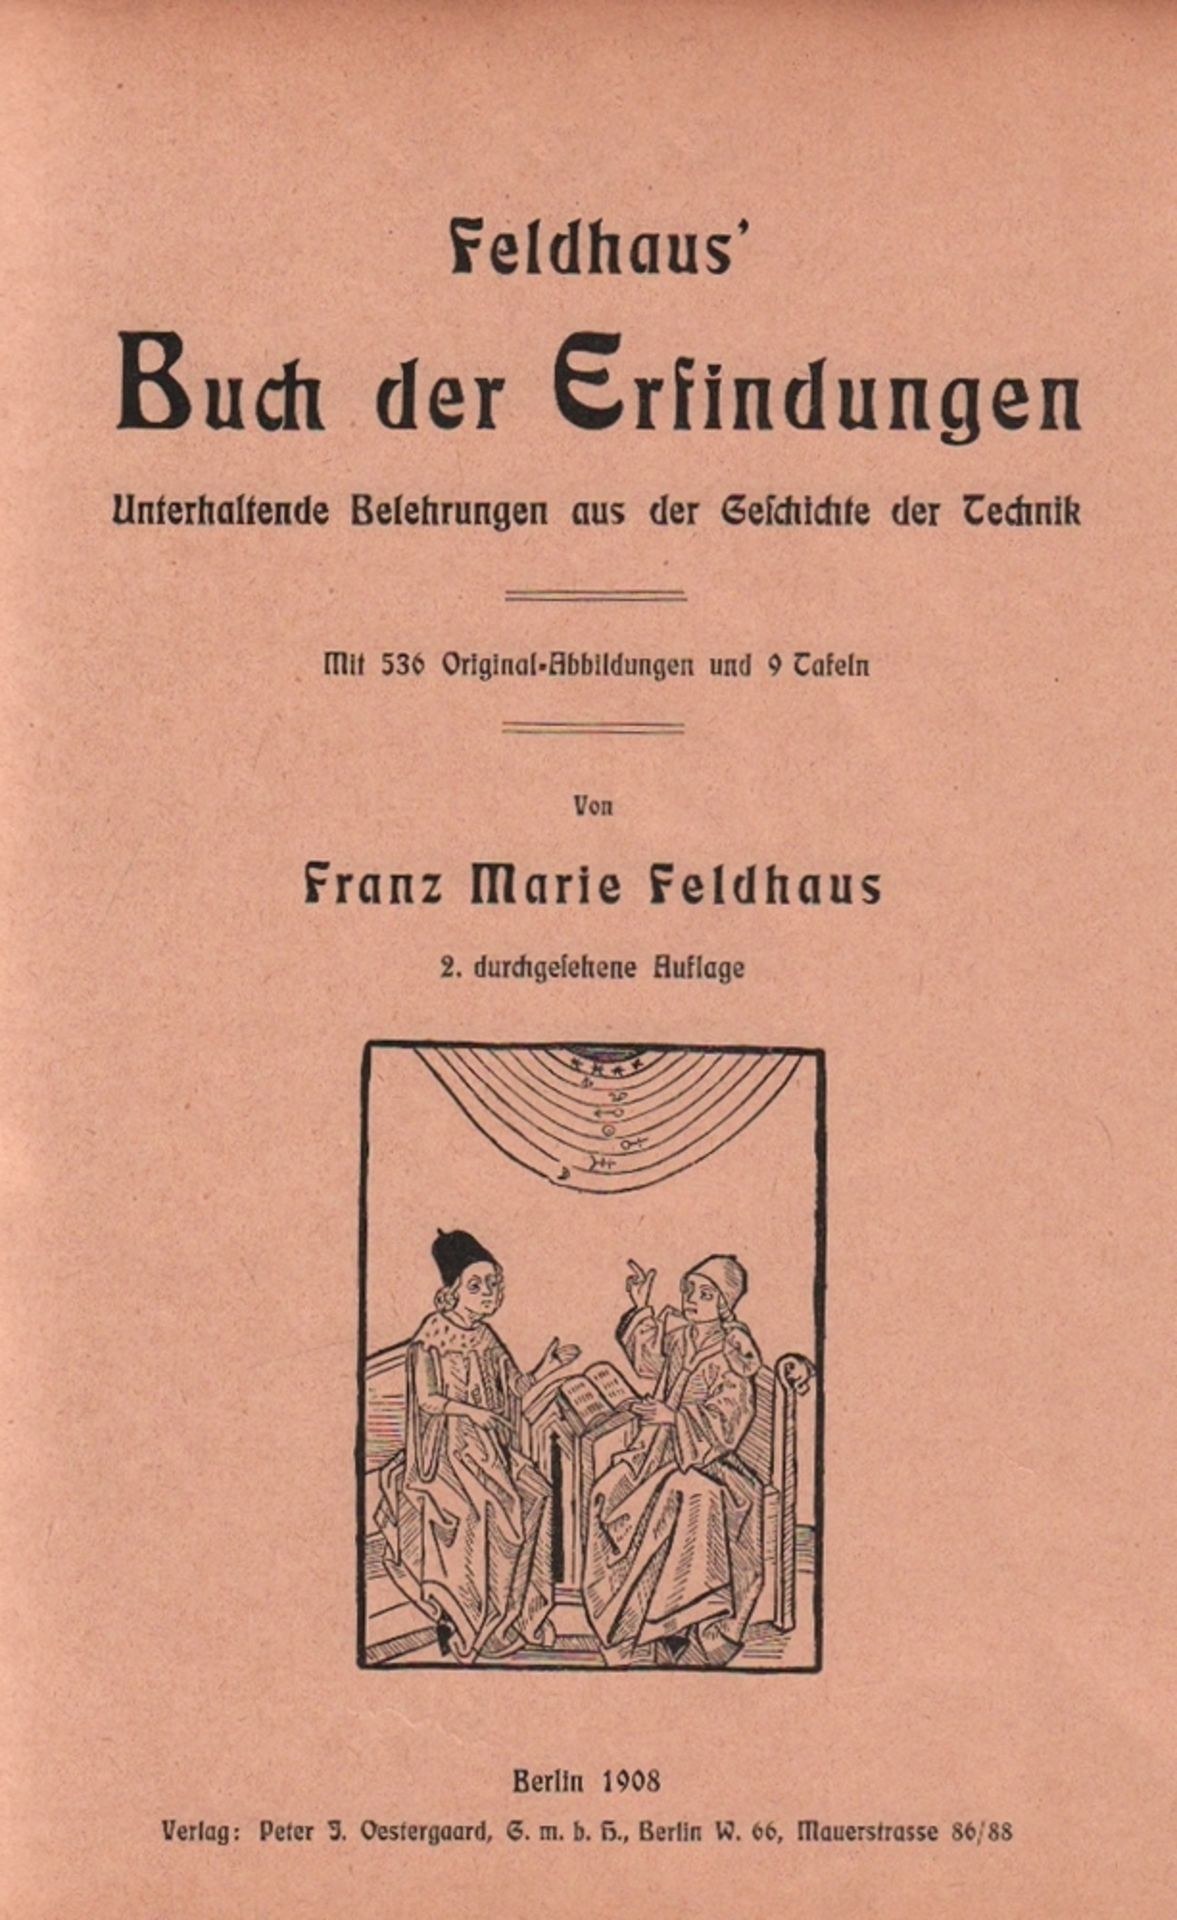 Technik. Feldhaus, Franz Marie. Feldhaus‘ Buch der Erfindungen. Unterhaltende Belehrungen aus der